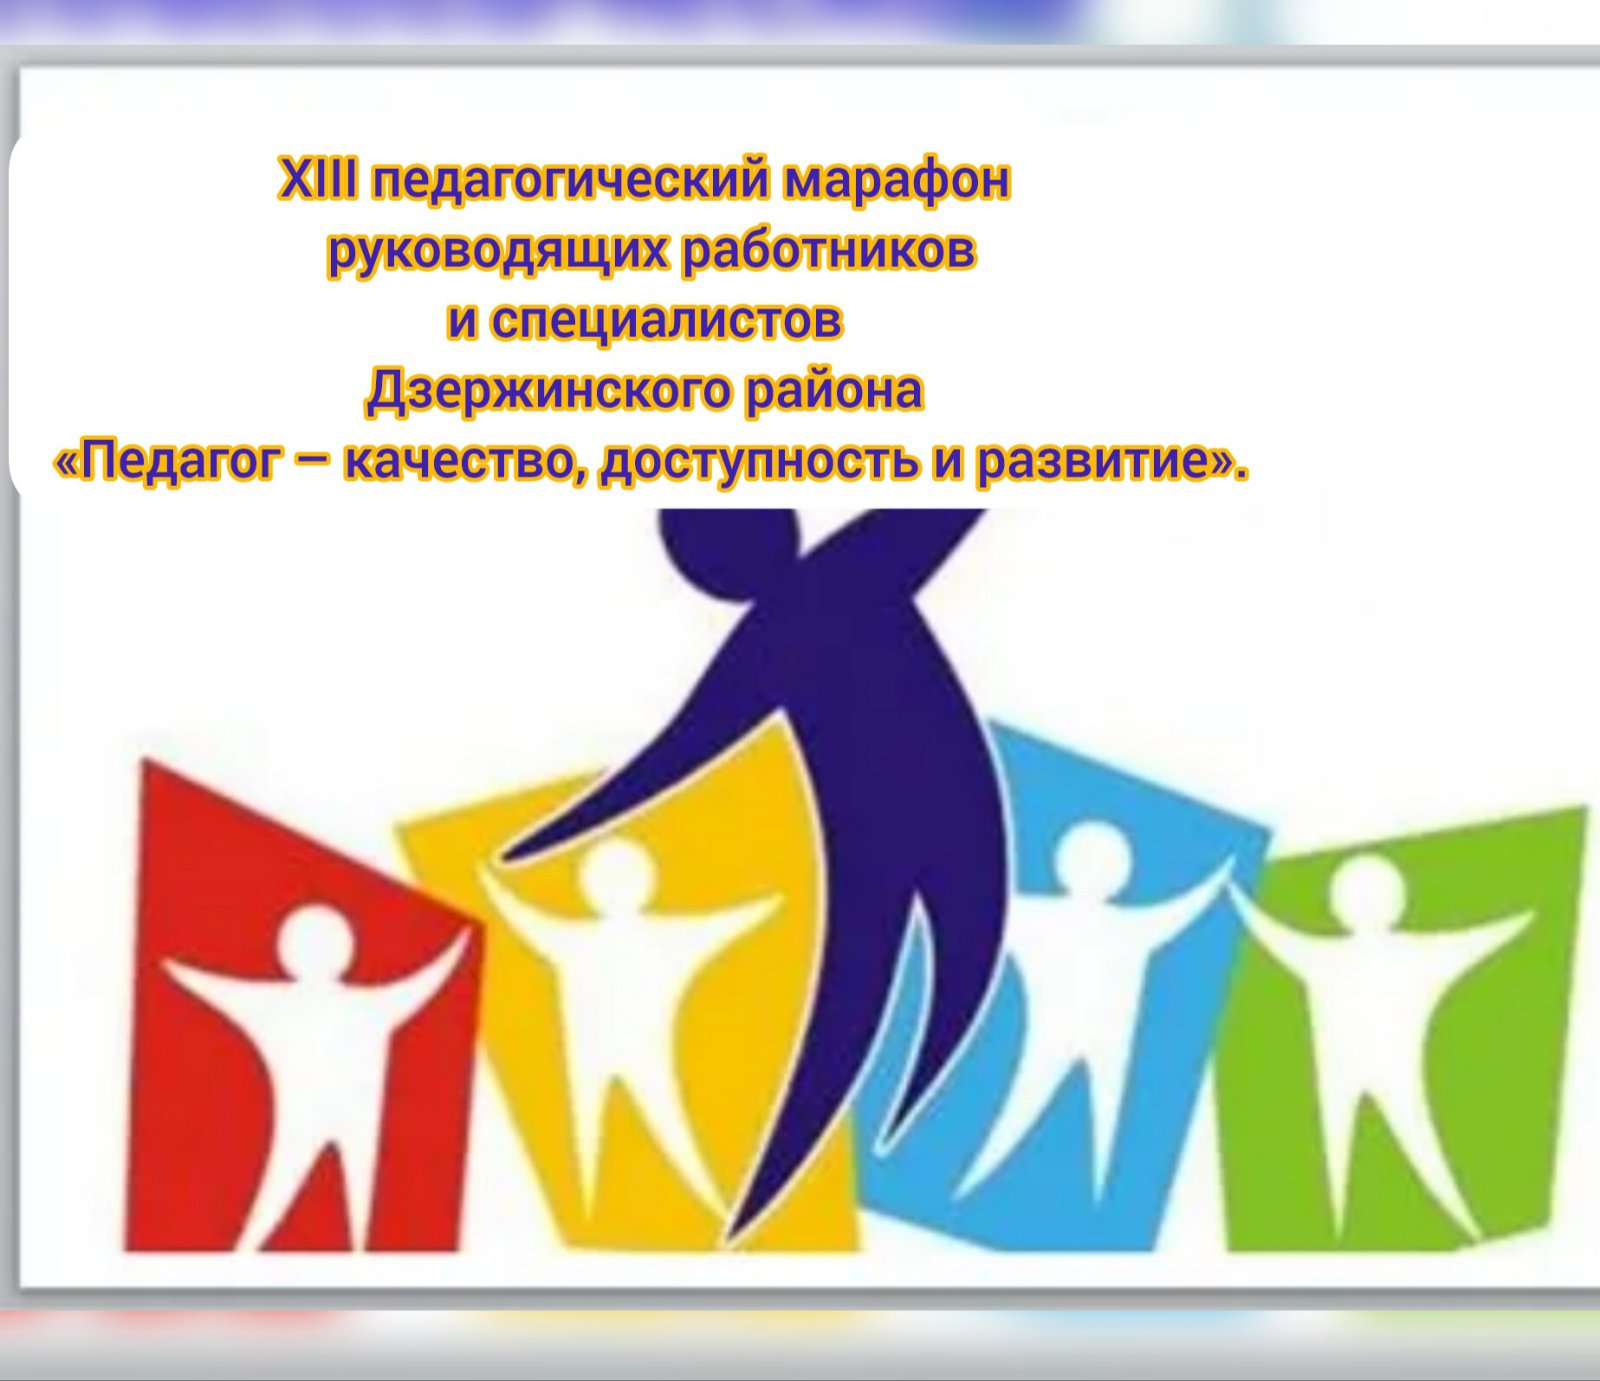 XIII педагогический марафон руководящих работников и специалистов Дзержинского района  